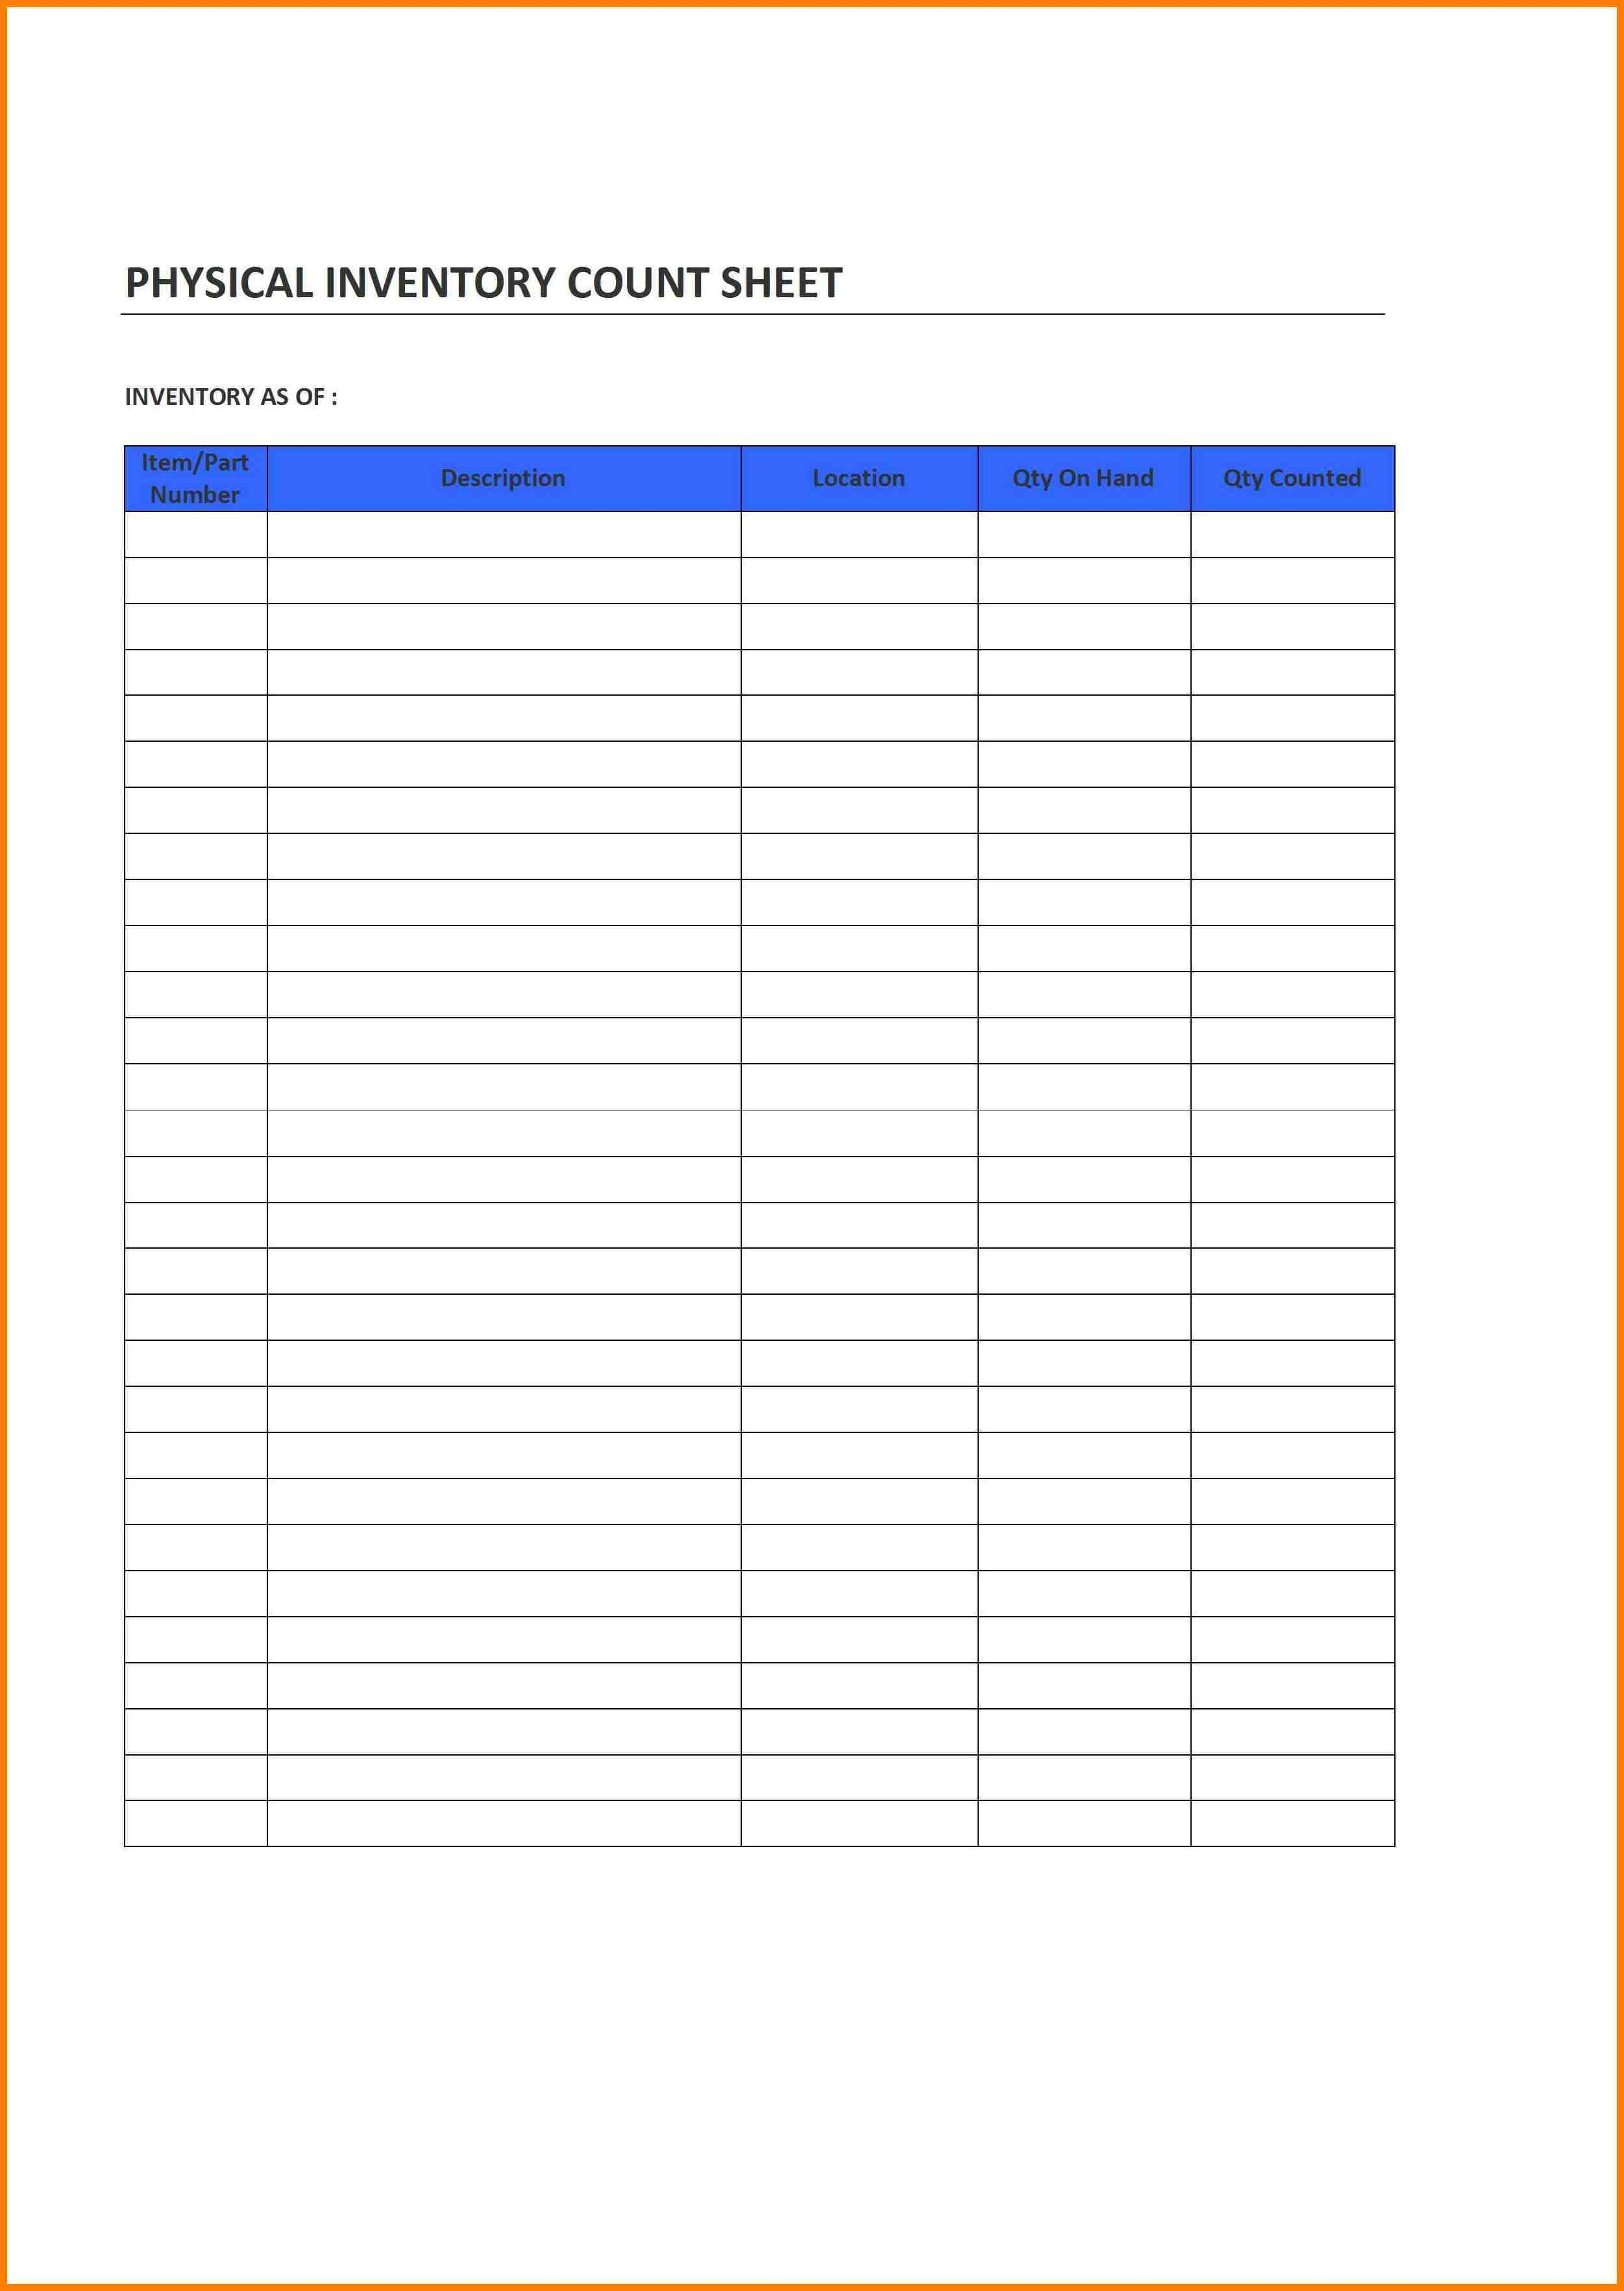 Blank Spreadsheet Template Pdf Intended For Spreadsheet Templates Sample Pdf And 8 Printable Blank Spreadsheet